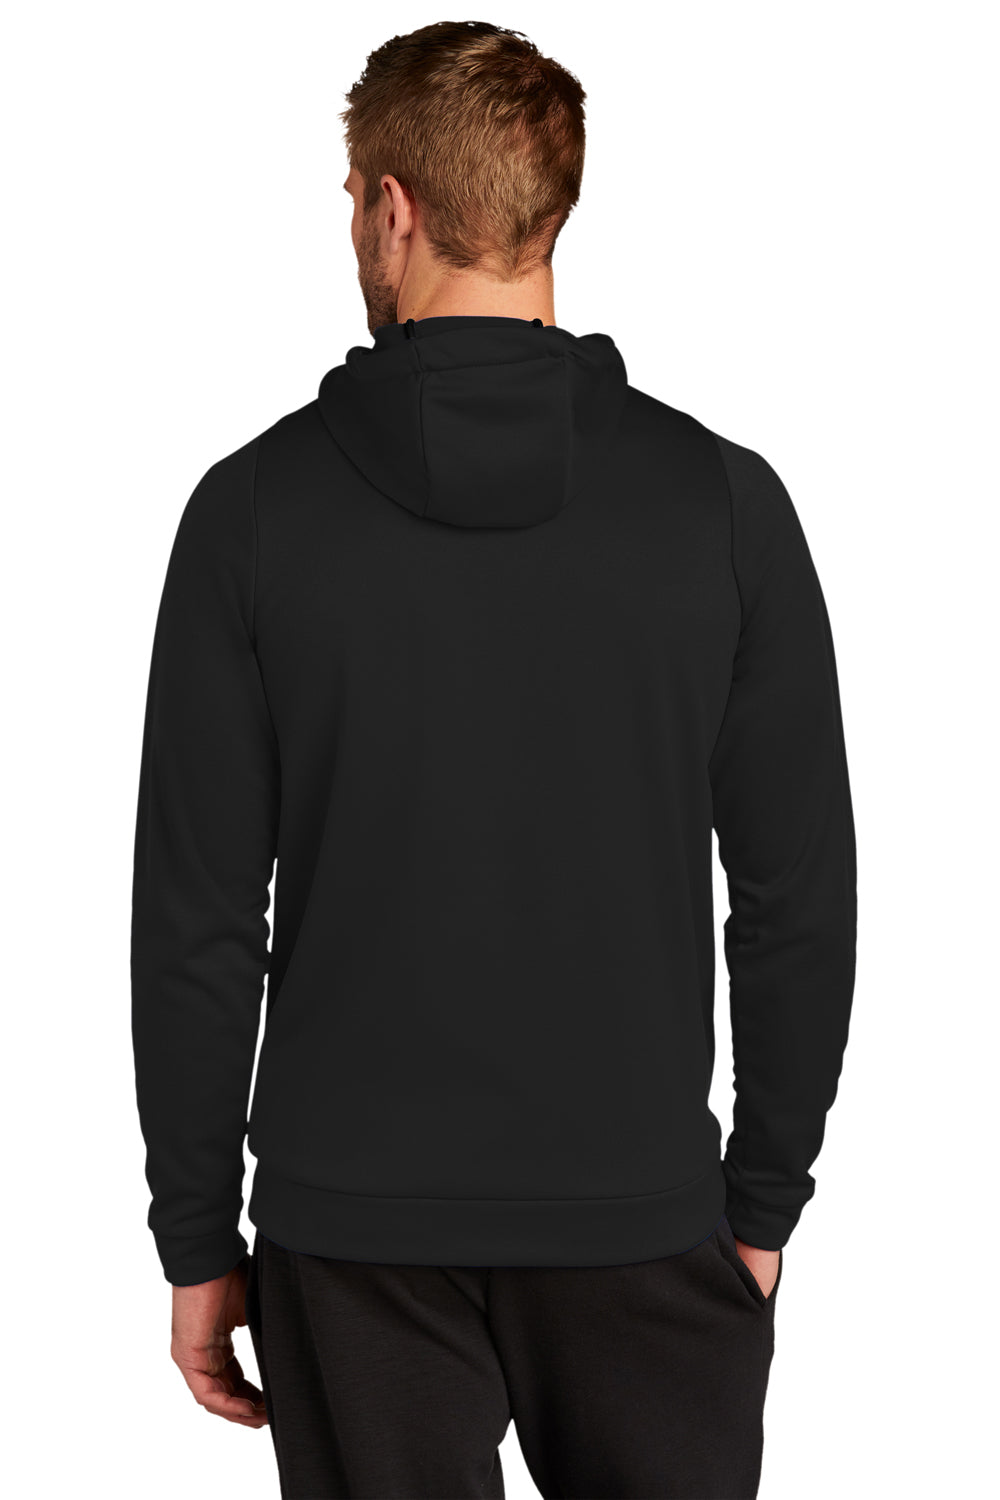 Nike CN9473 Mens Therma-Fit Moisture Wicking Fleece Hooded Sweatshirt Hoodie Team Black Model Back